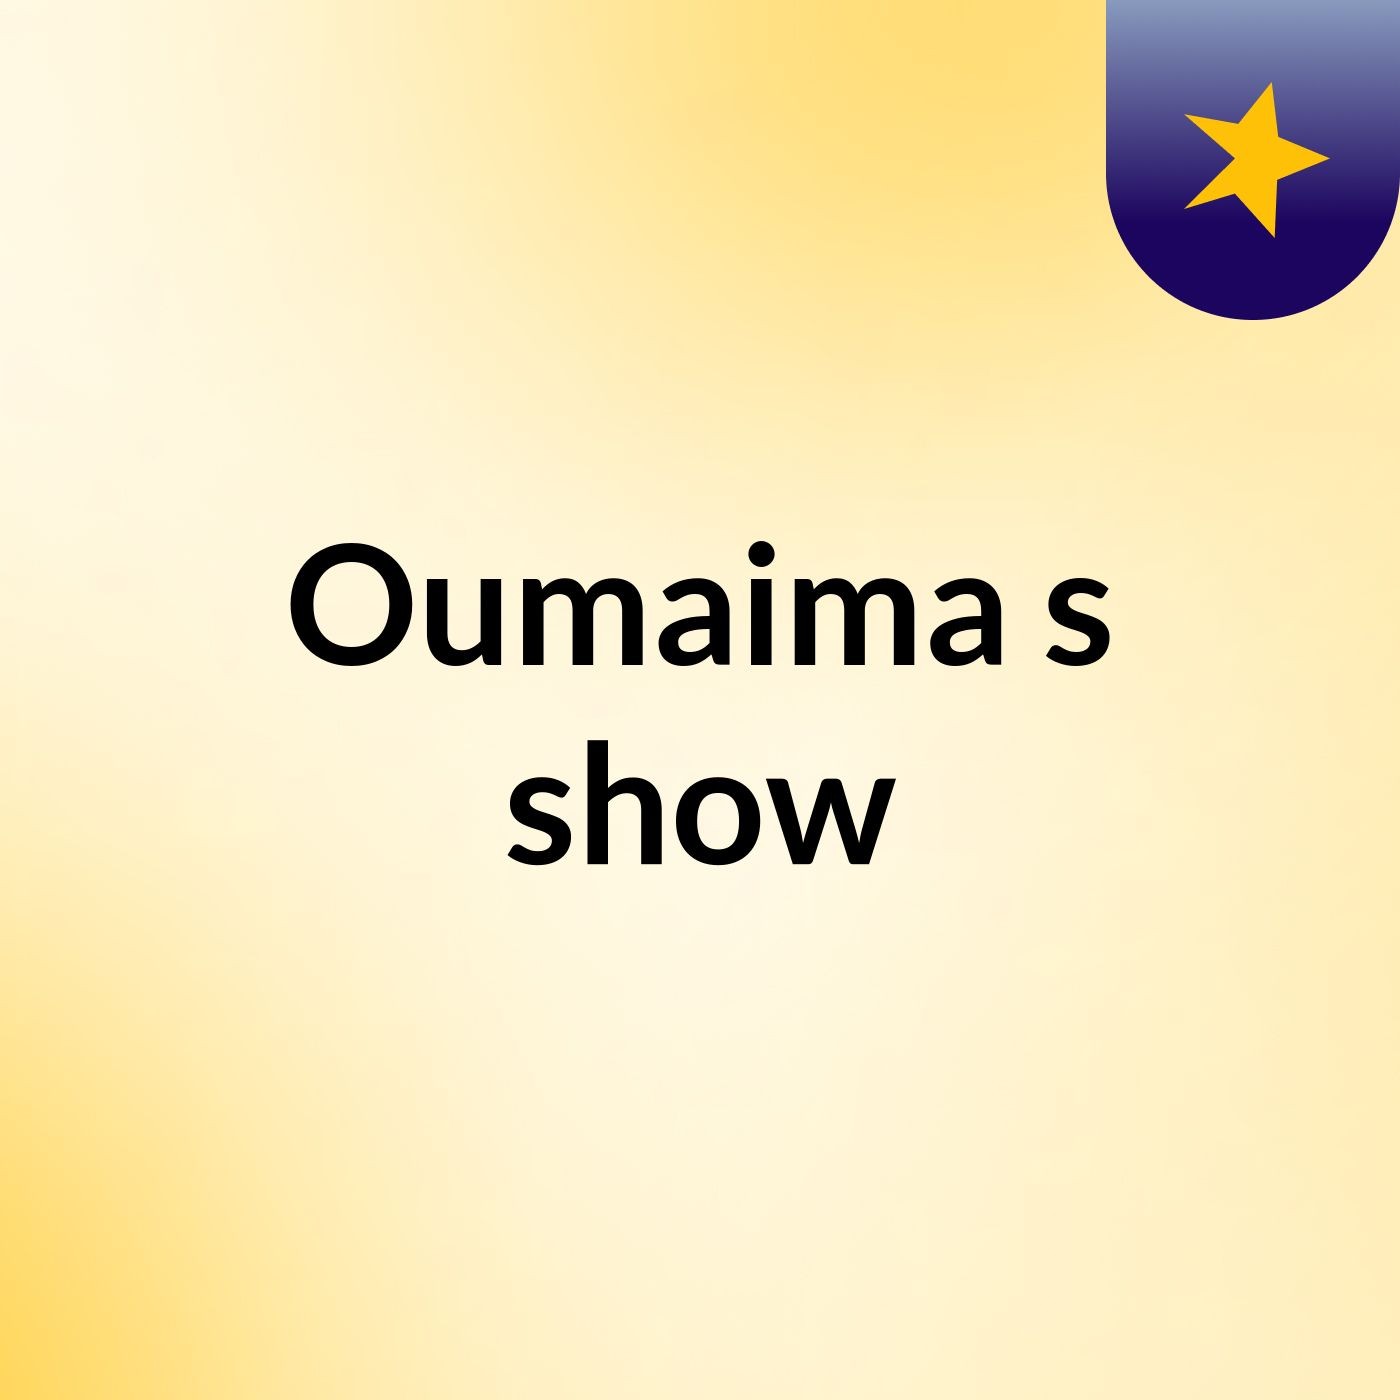 Oumaima's show